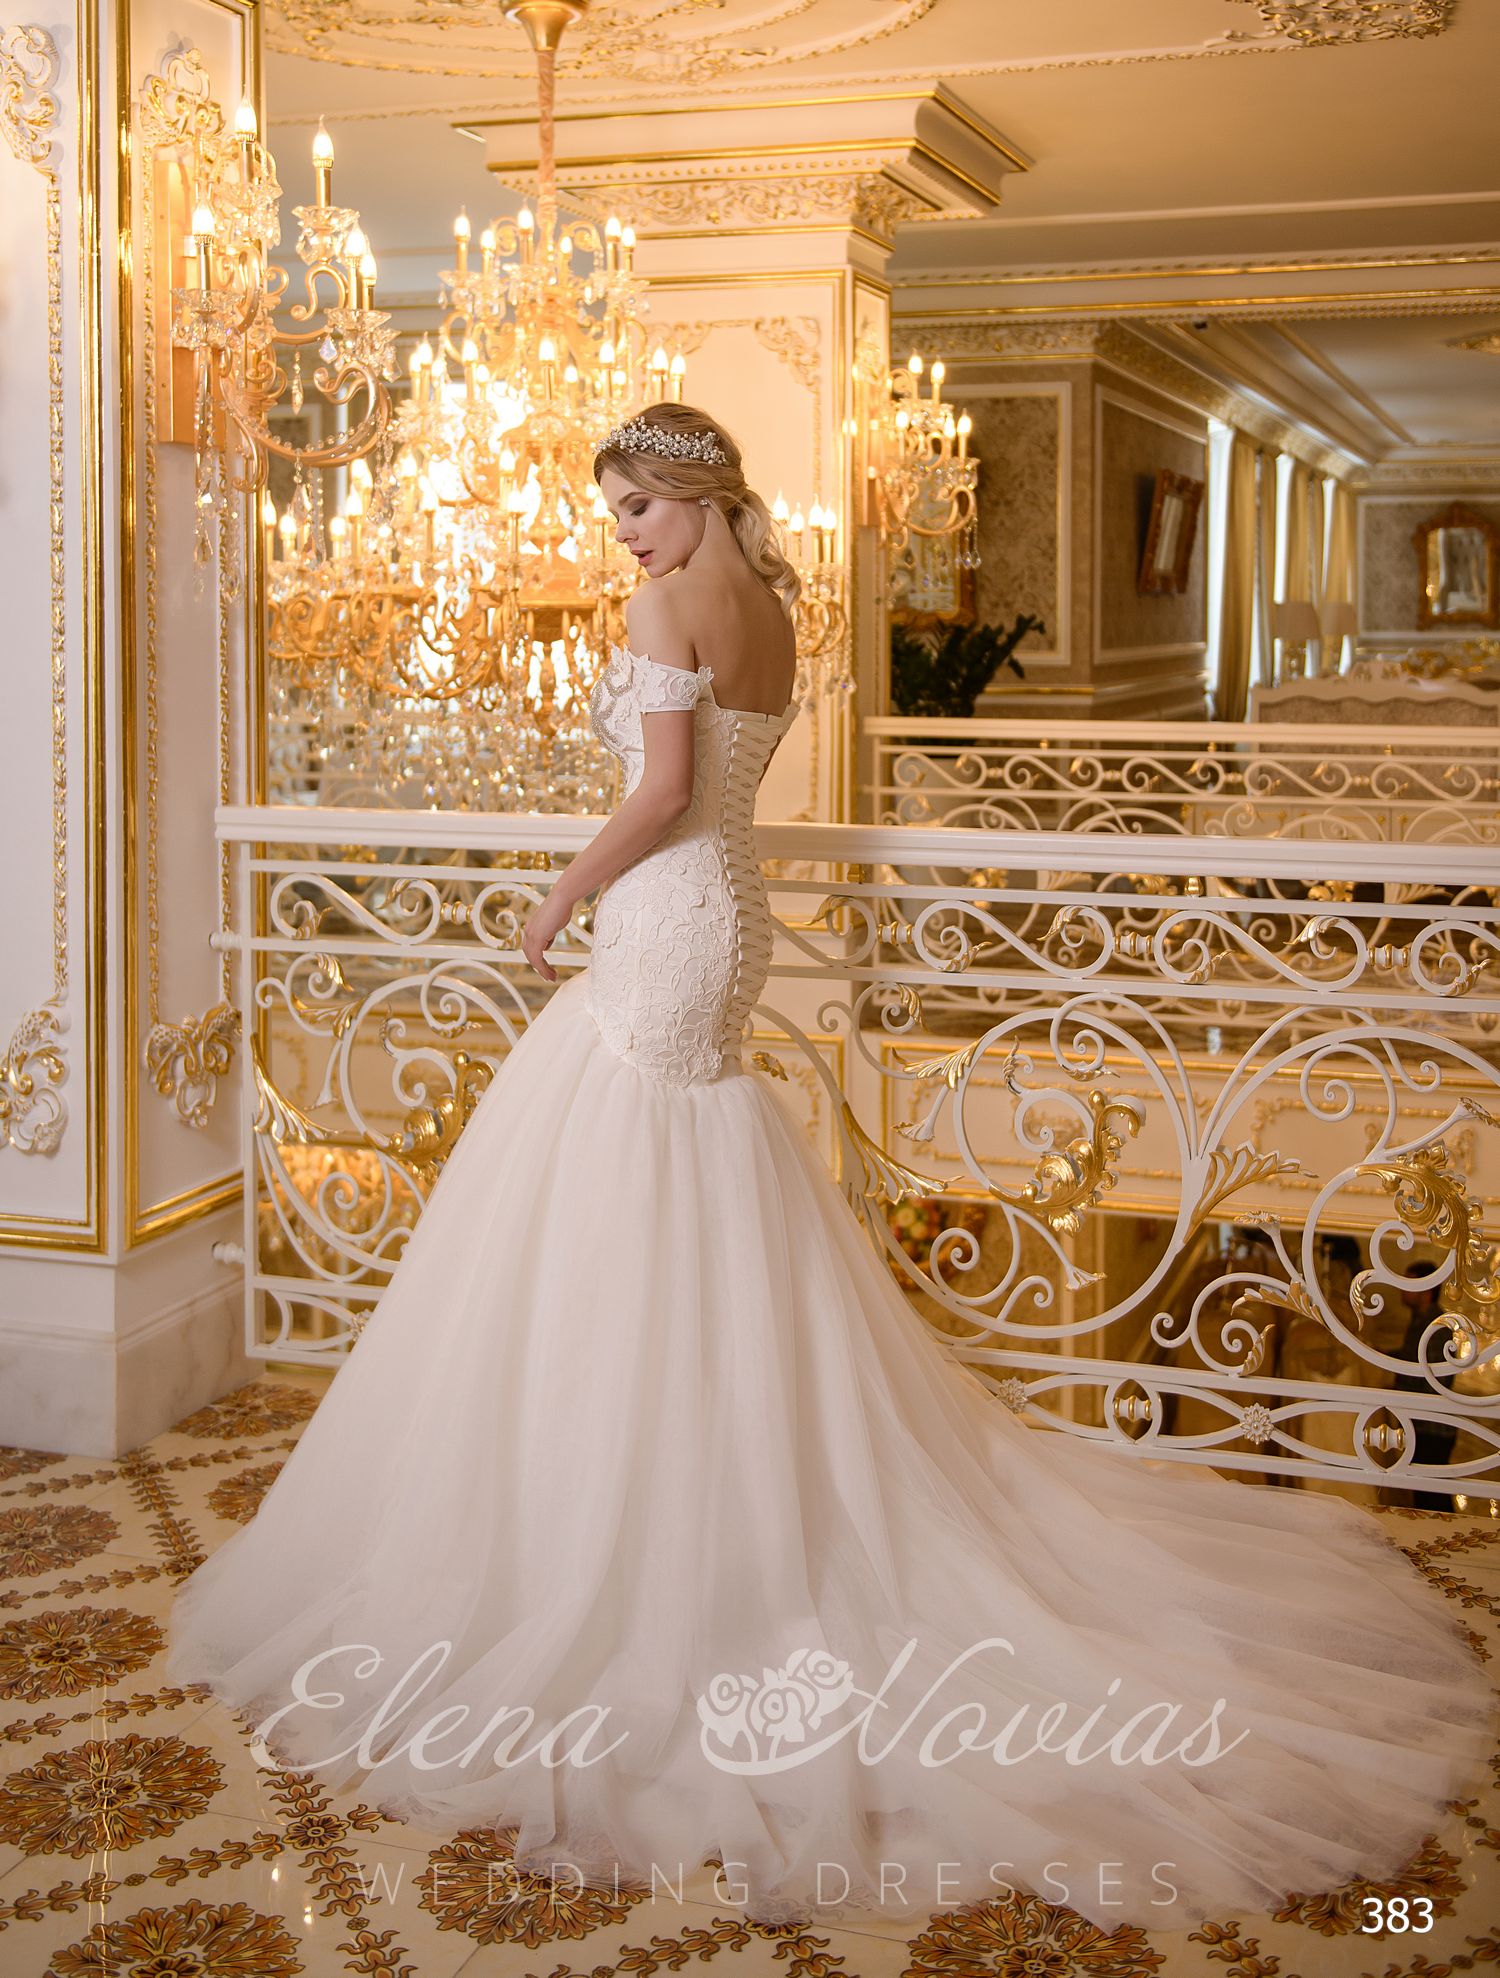 Elegant wedding dress Godet from Elenanovias